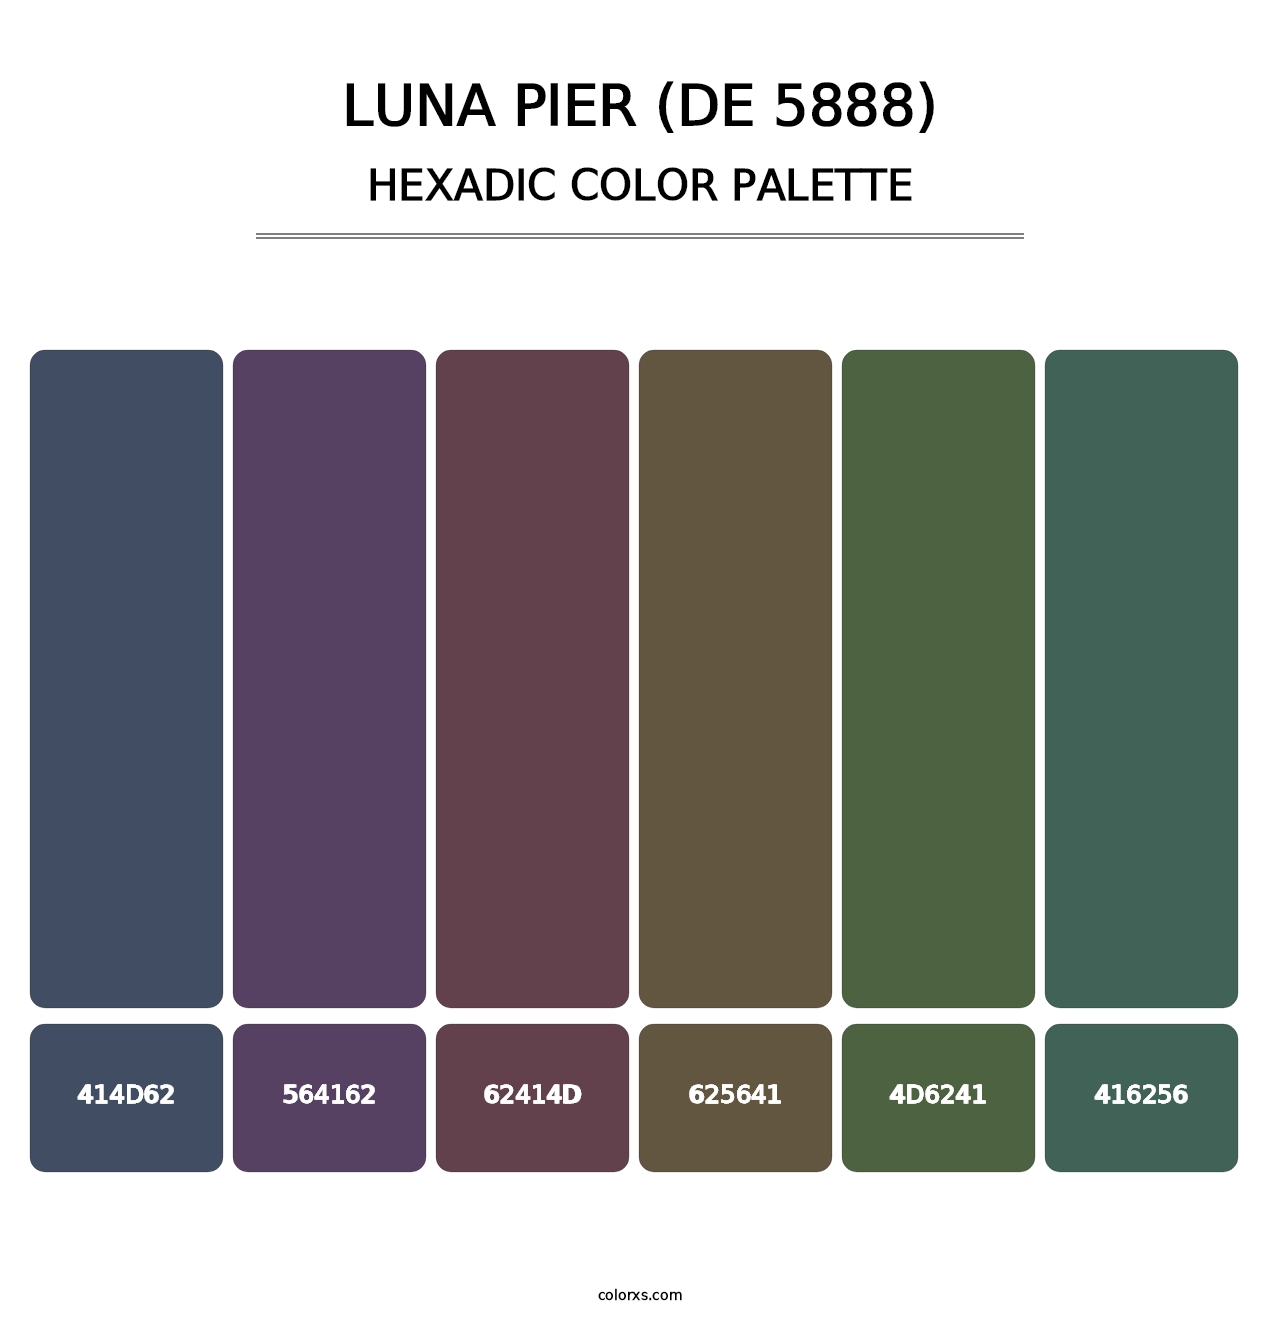 Luna Pier (DE 5888) - Hexadic Color Palette